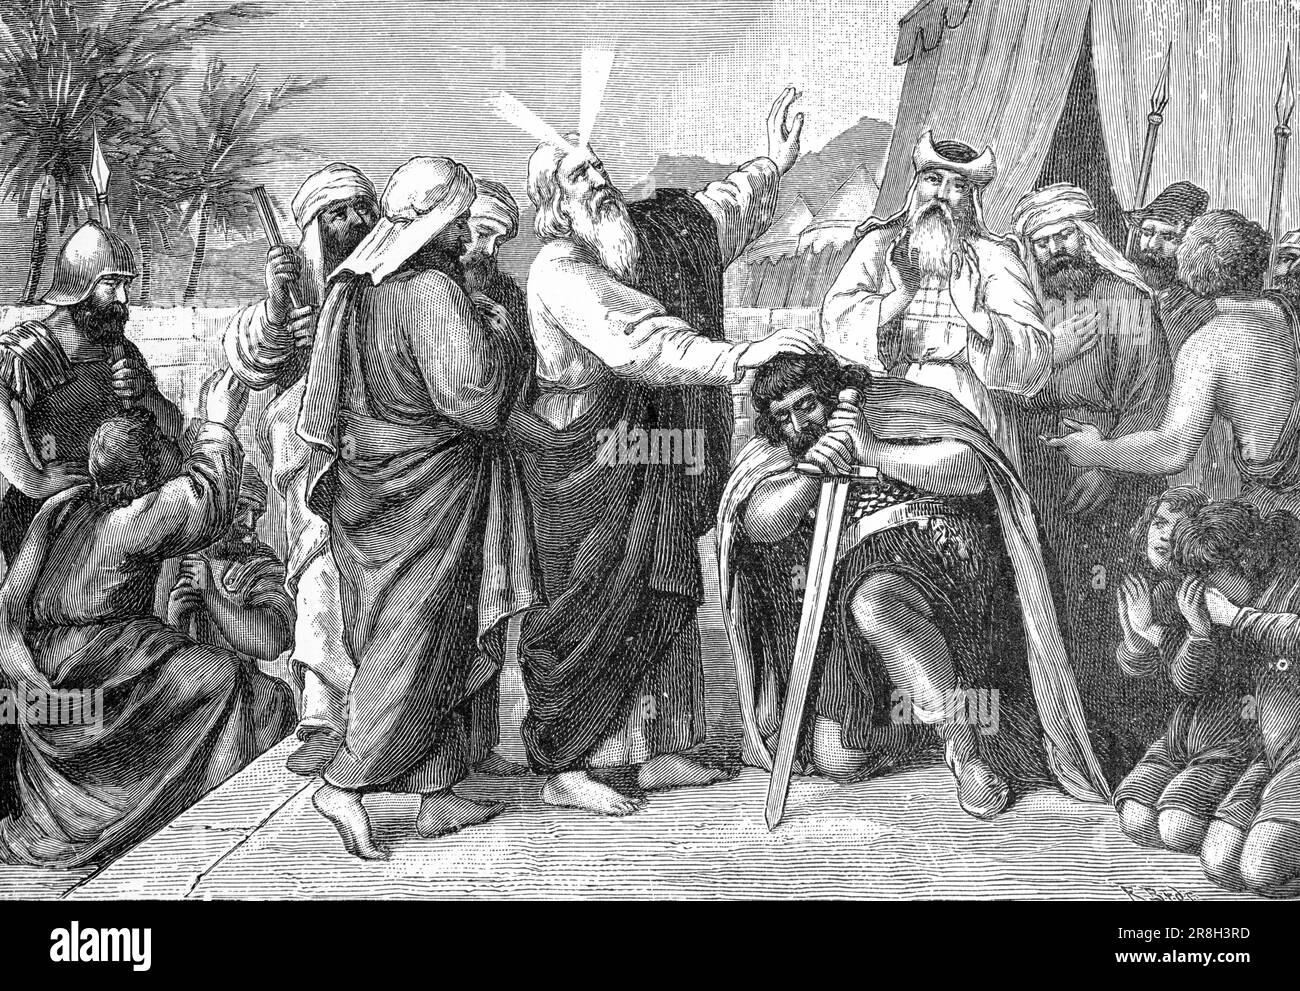 Giosuè diventa leader del popolo, Quinto Libro Mose, capitolo 31, versetto 14f, Antico Testamento, Bibbia, illustrazione storica 1890 Foto Stock